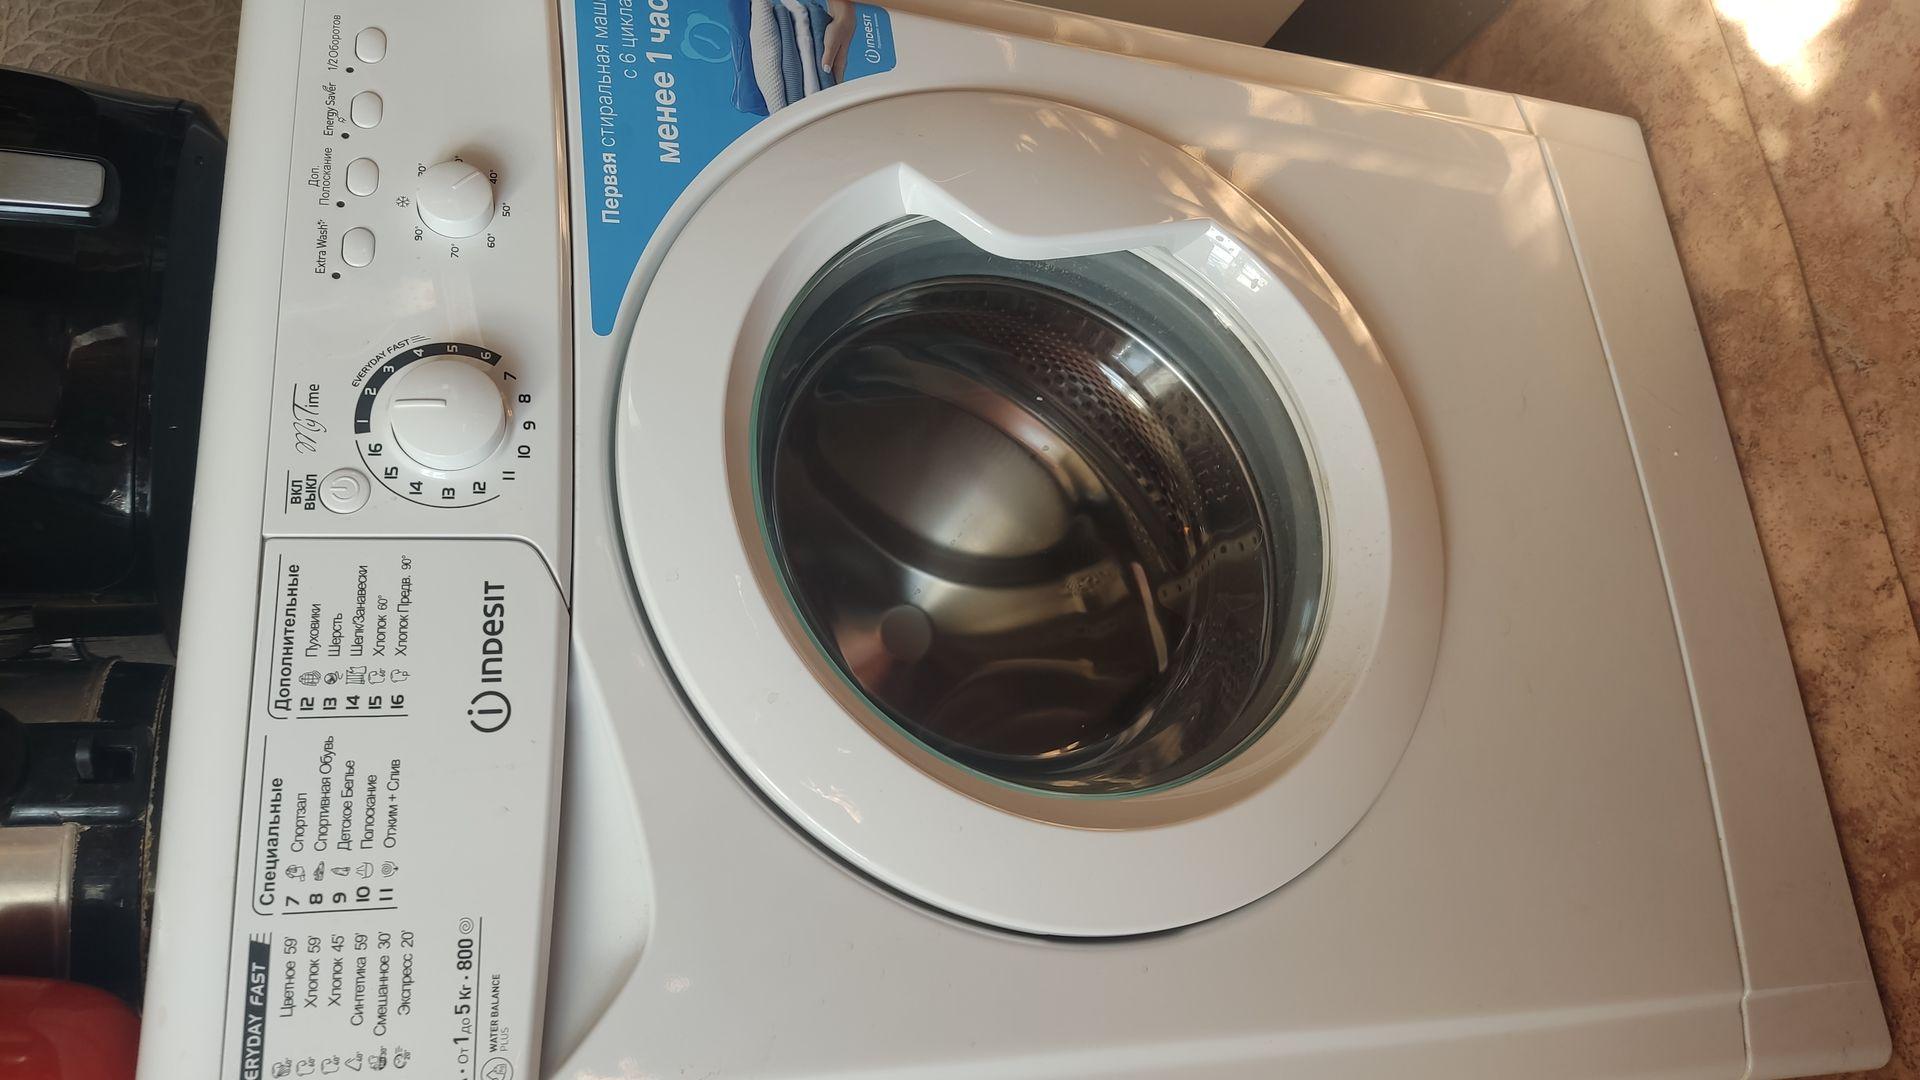 Ремонт стиральных машин Indesit iwsc